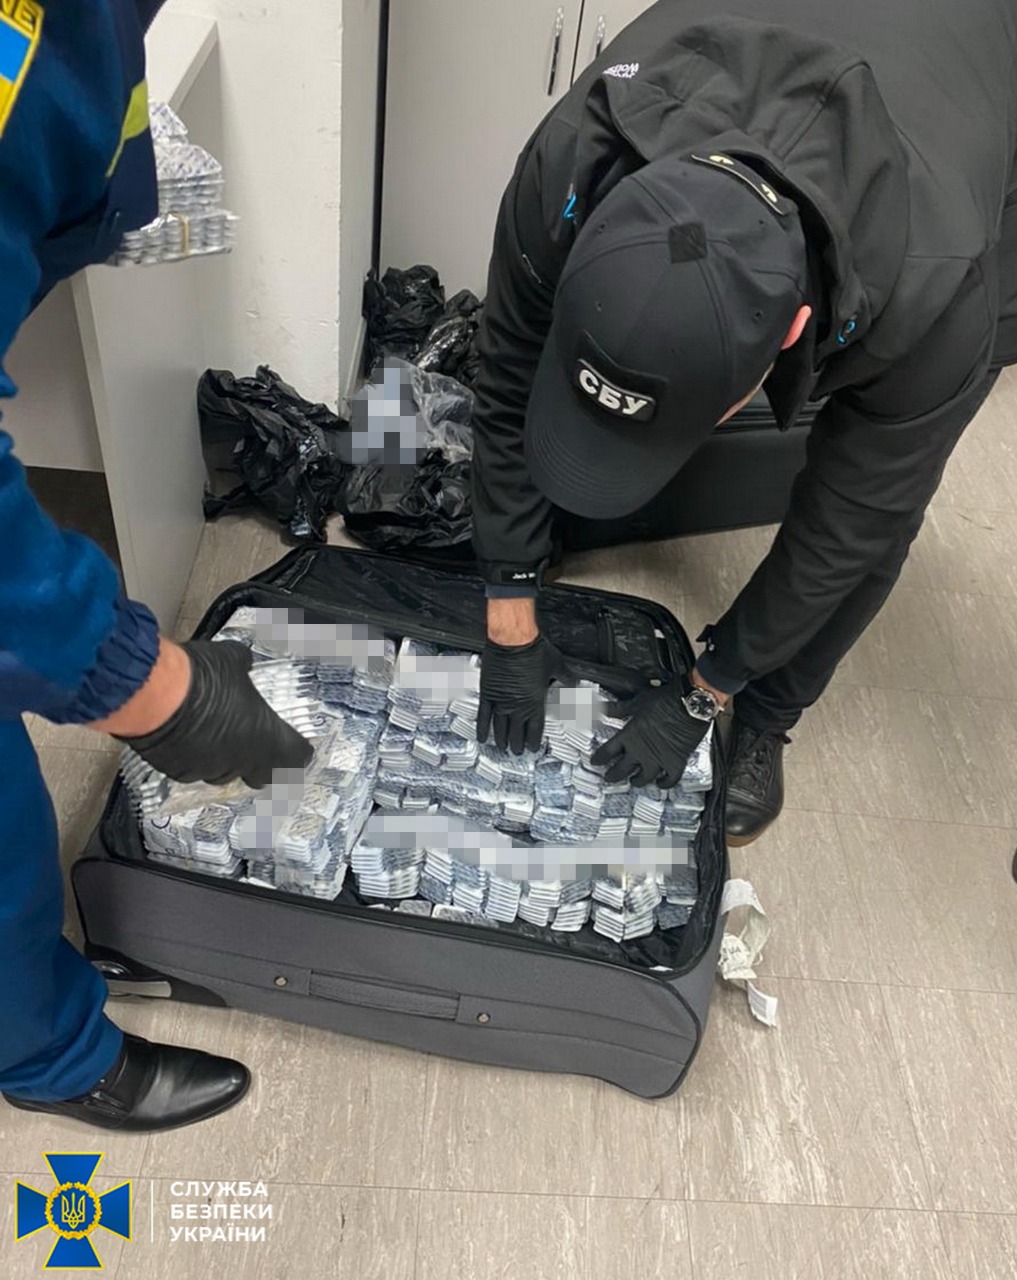  «Туристы» возили по 10 кг «товара» в своих чемоданах: СБУ заблокировала контрабанду прекурсоров через аэропорт «Борисполь»